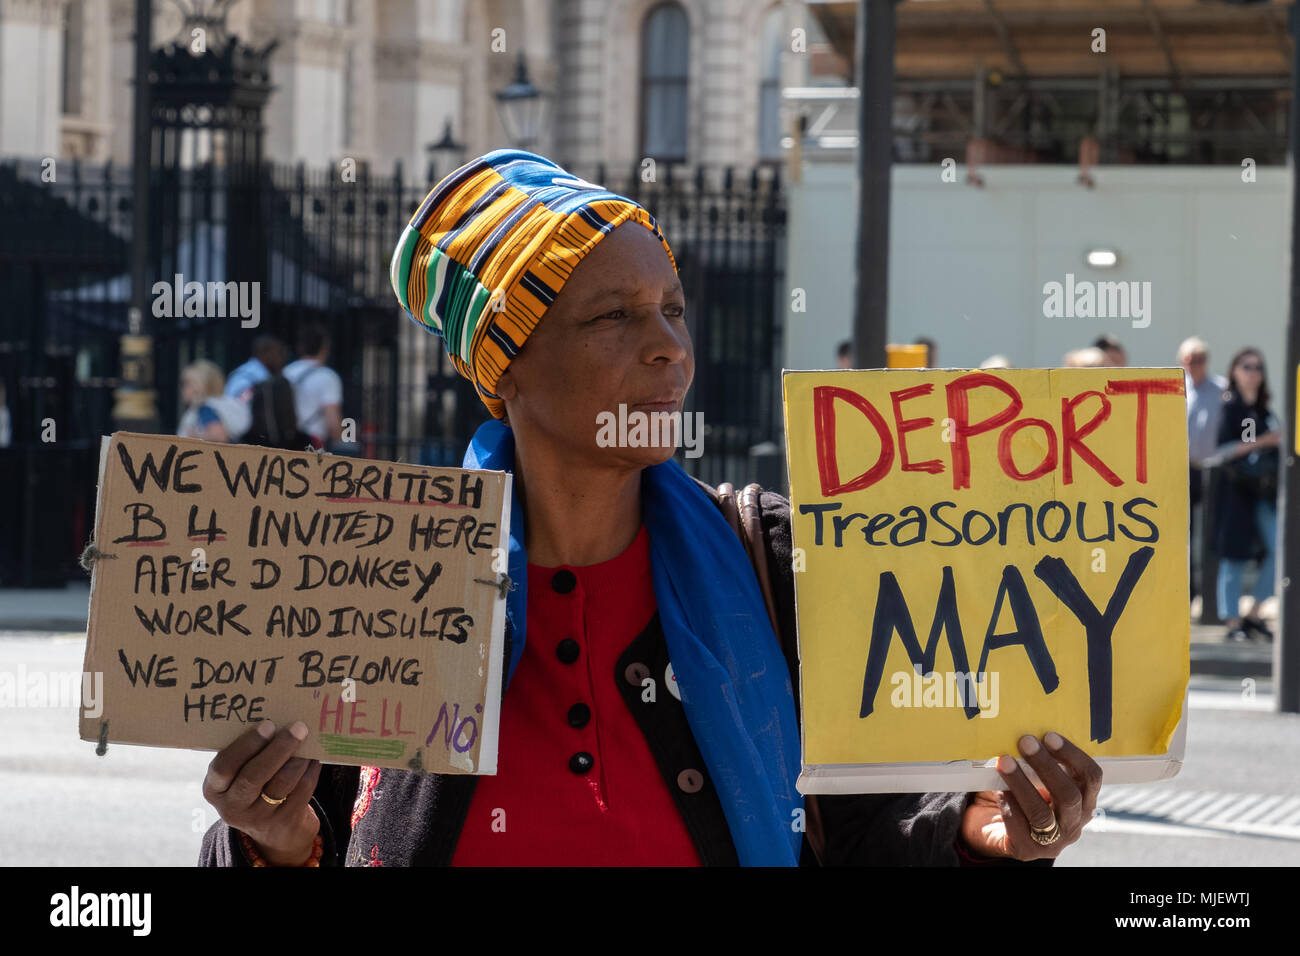 Londra, UK, 5 maggio 2018, dimostranti partecipare a marzo per Windrush di fronte a Downing Street nel tentativo di rovesciare i governi in materia di immigrazione dichiarando Theresa Maggio la politica attuale è razzista. Credito: Adrian lobby/Alamy Live News Foto Stock